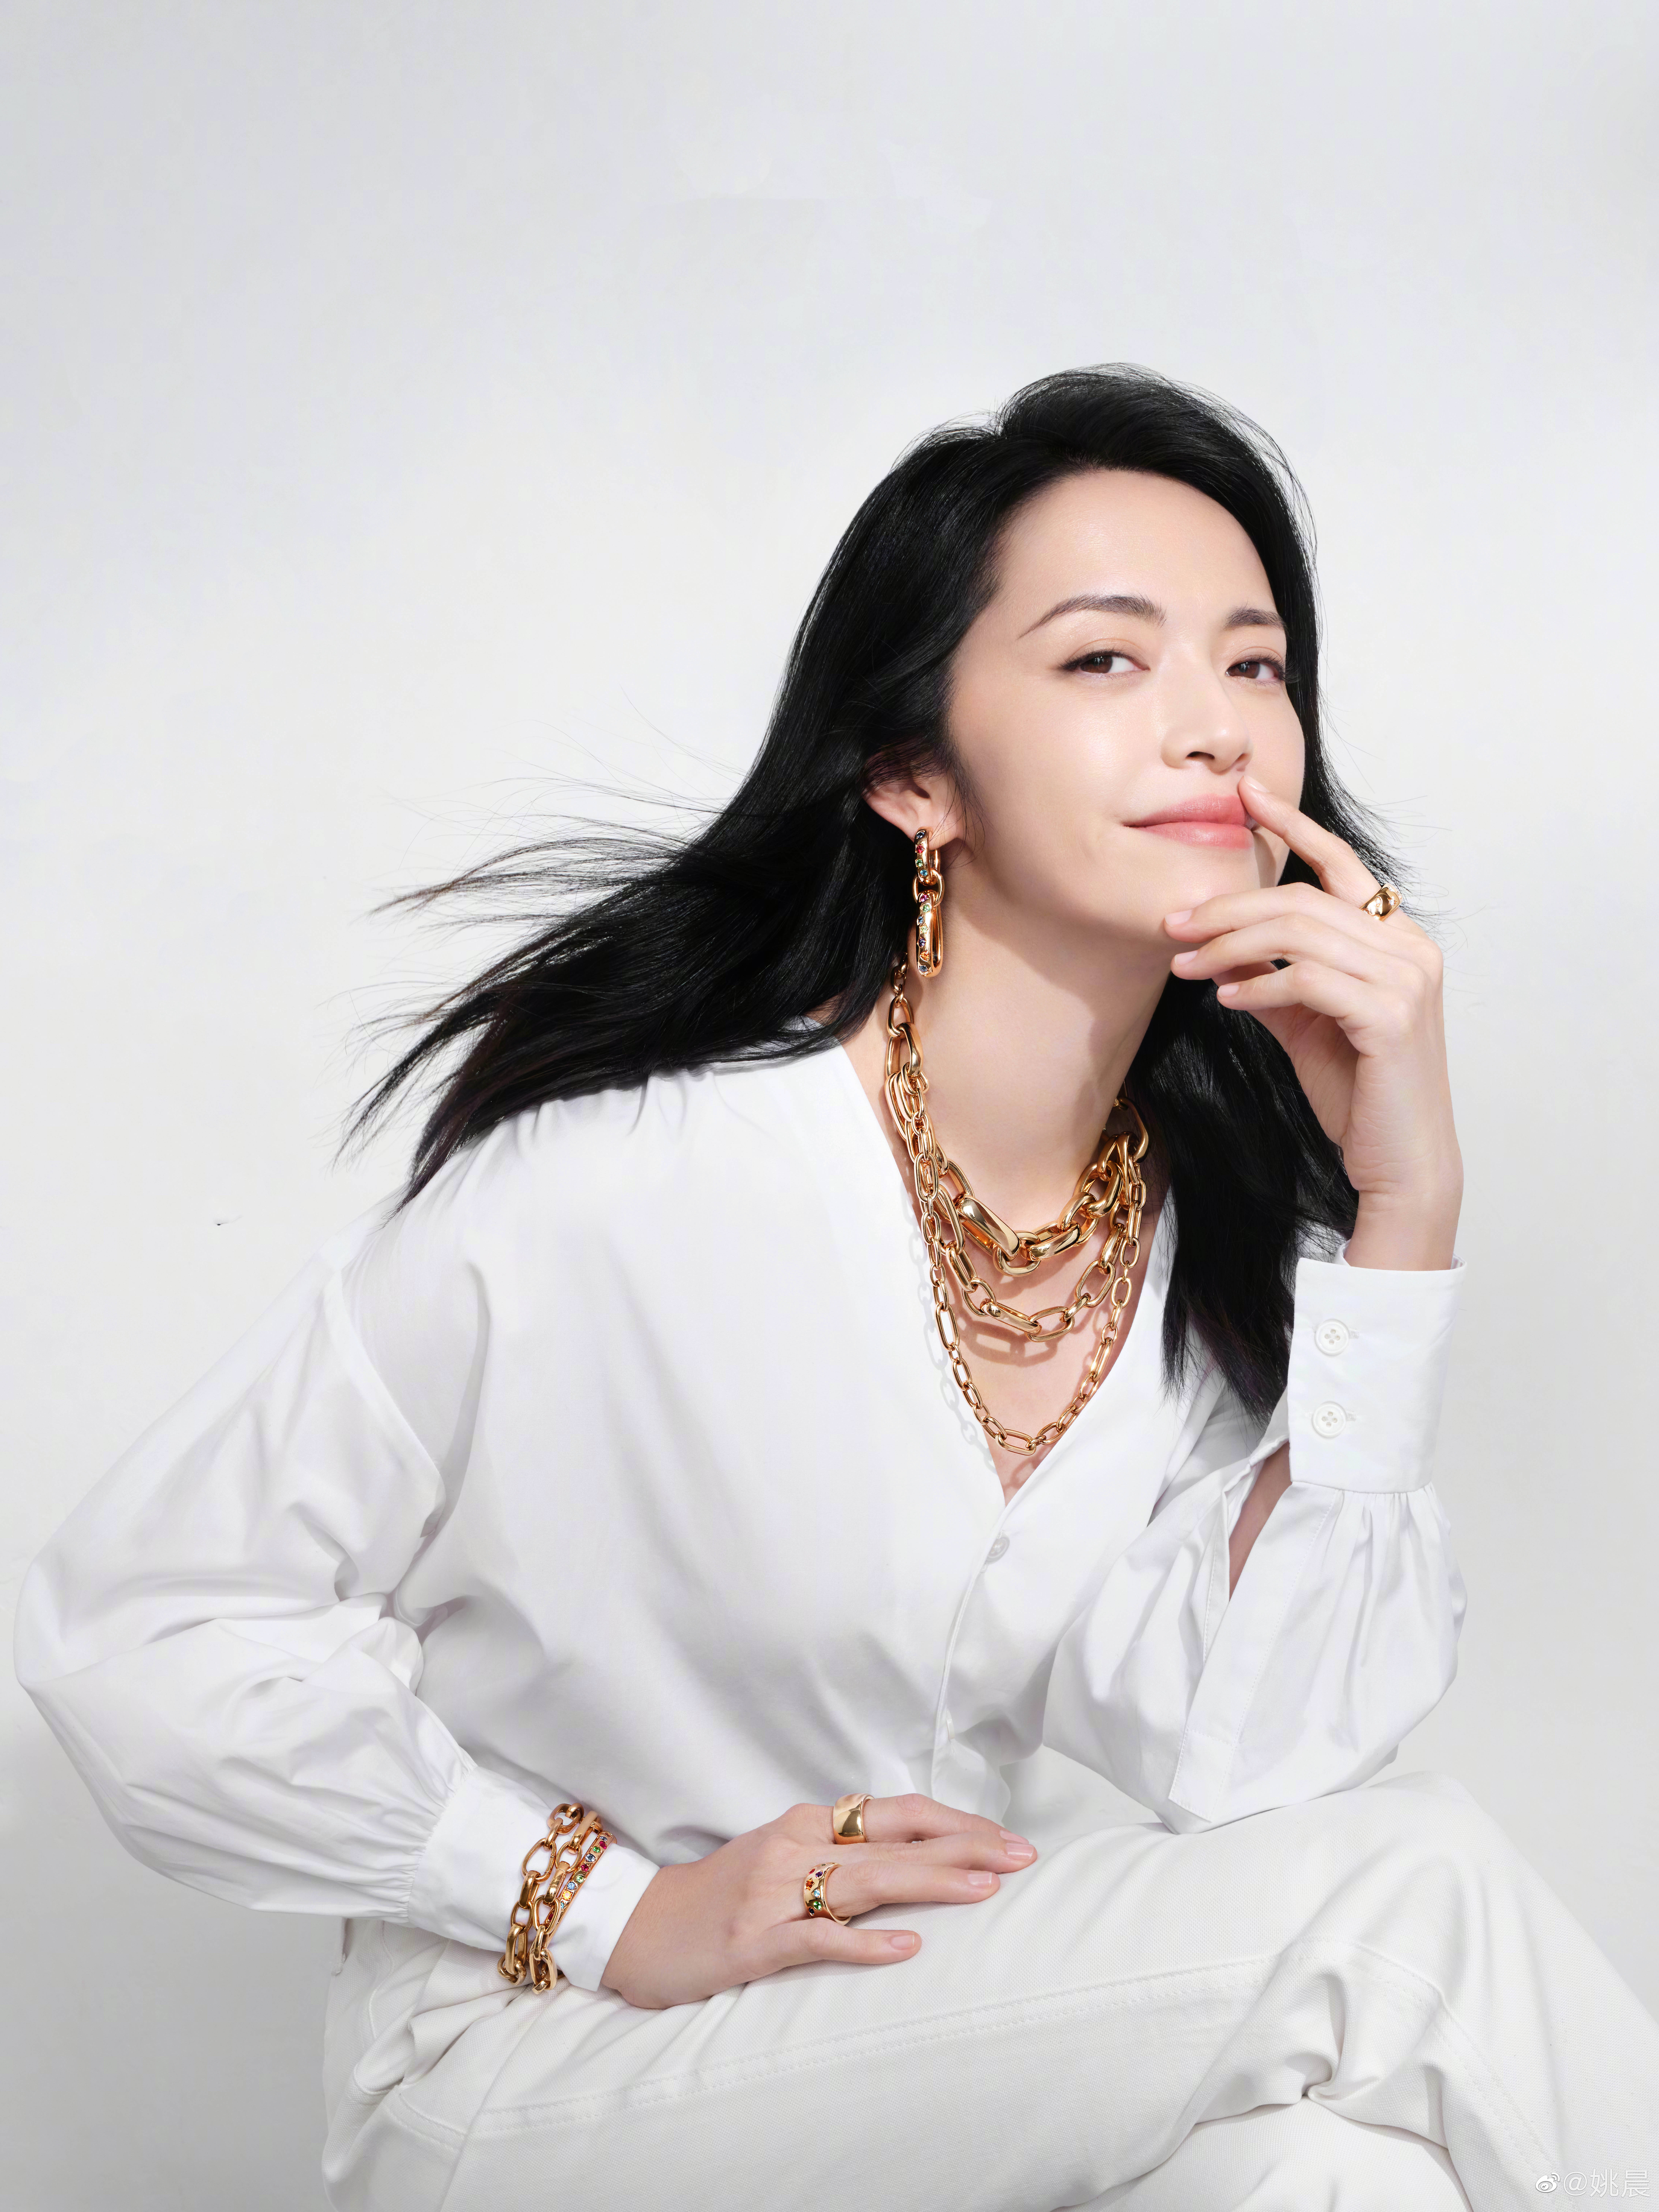 搜狐娱乐讯 日前,一组姚晨为某品牌拍摄的珠宝大片公开,照片里的姚晨